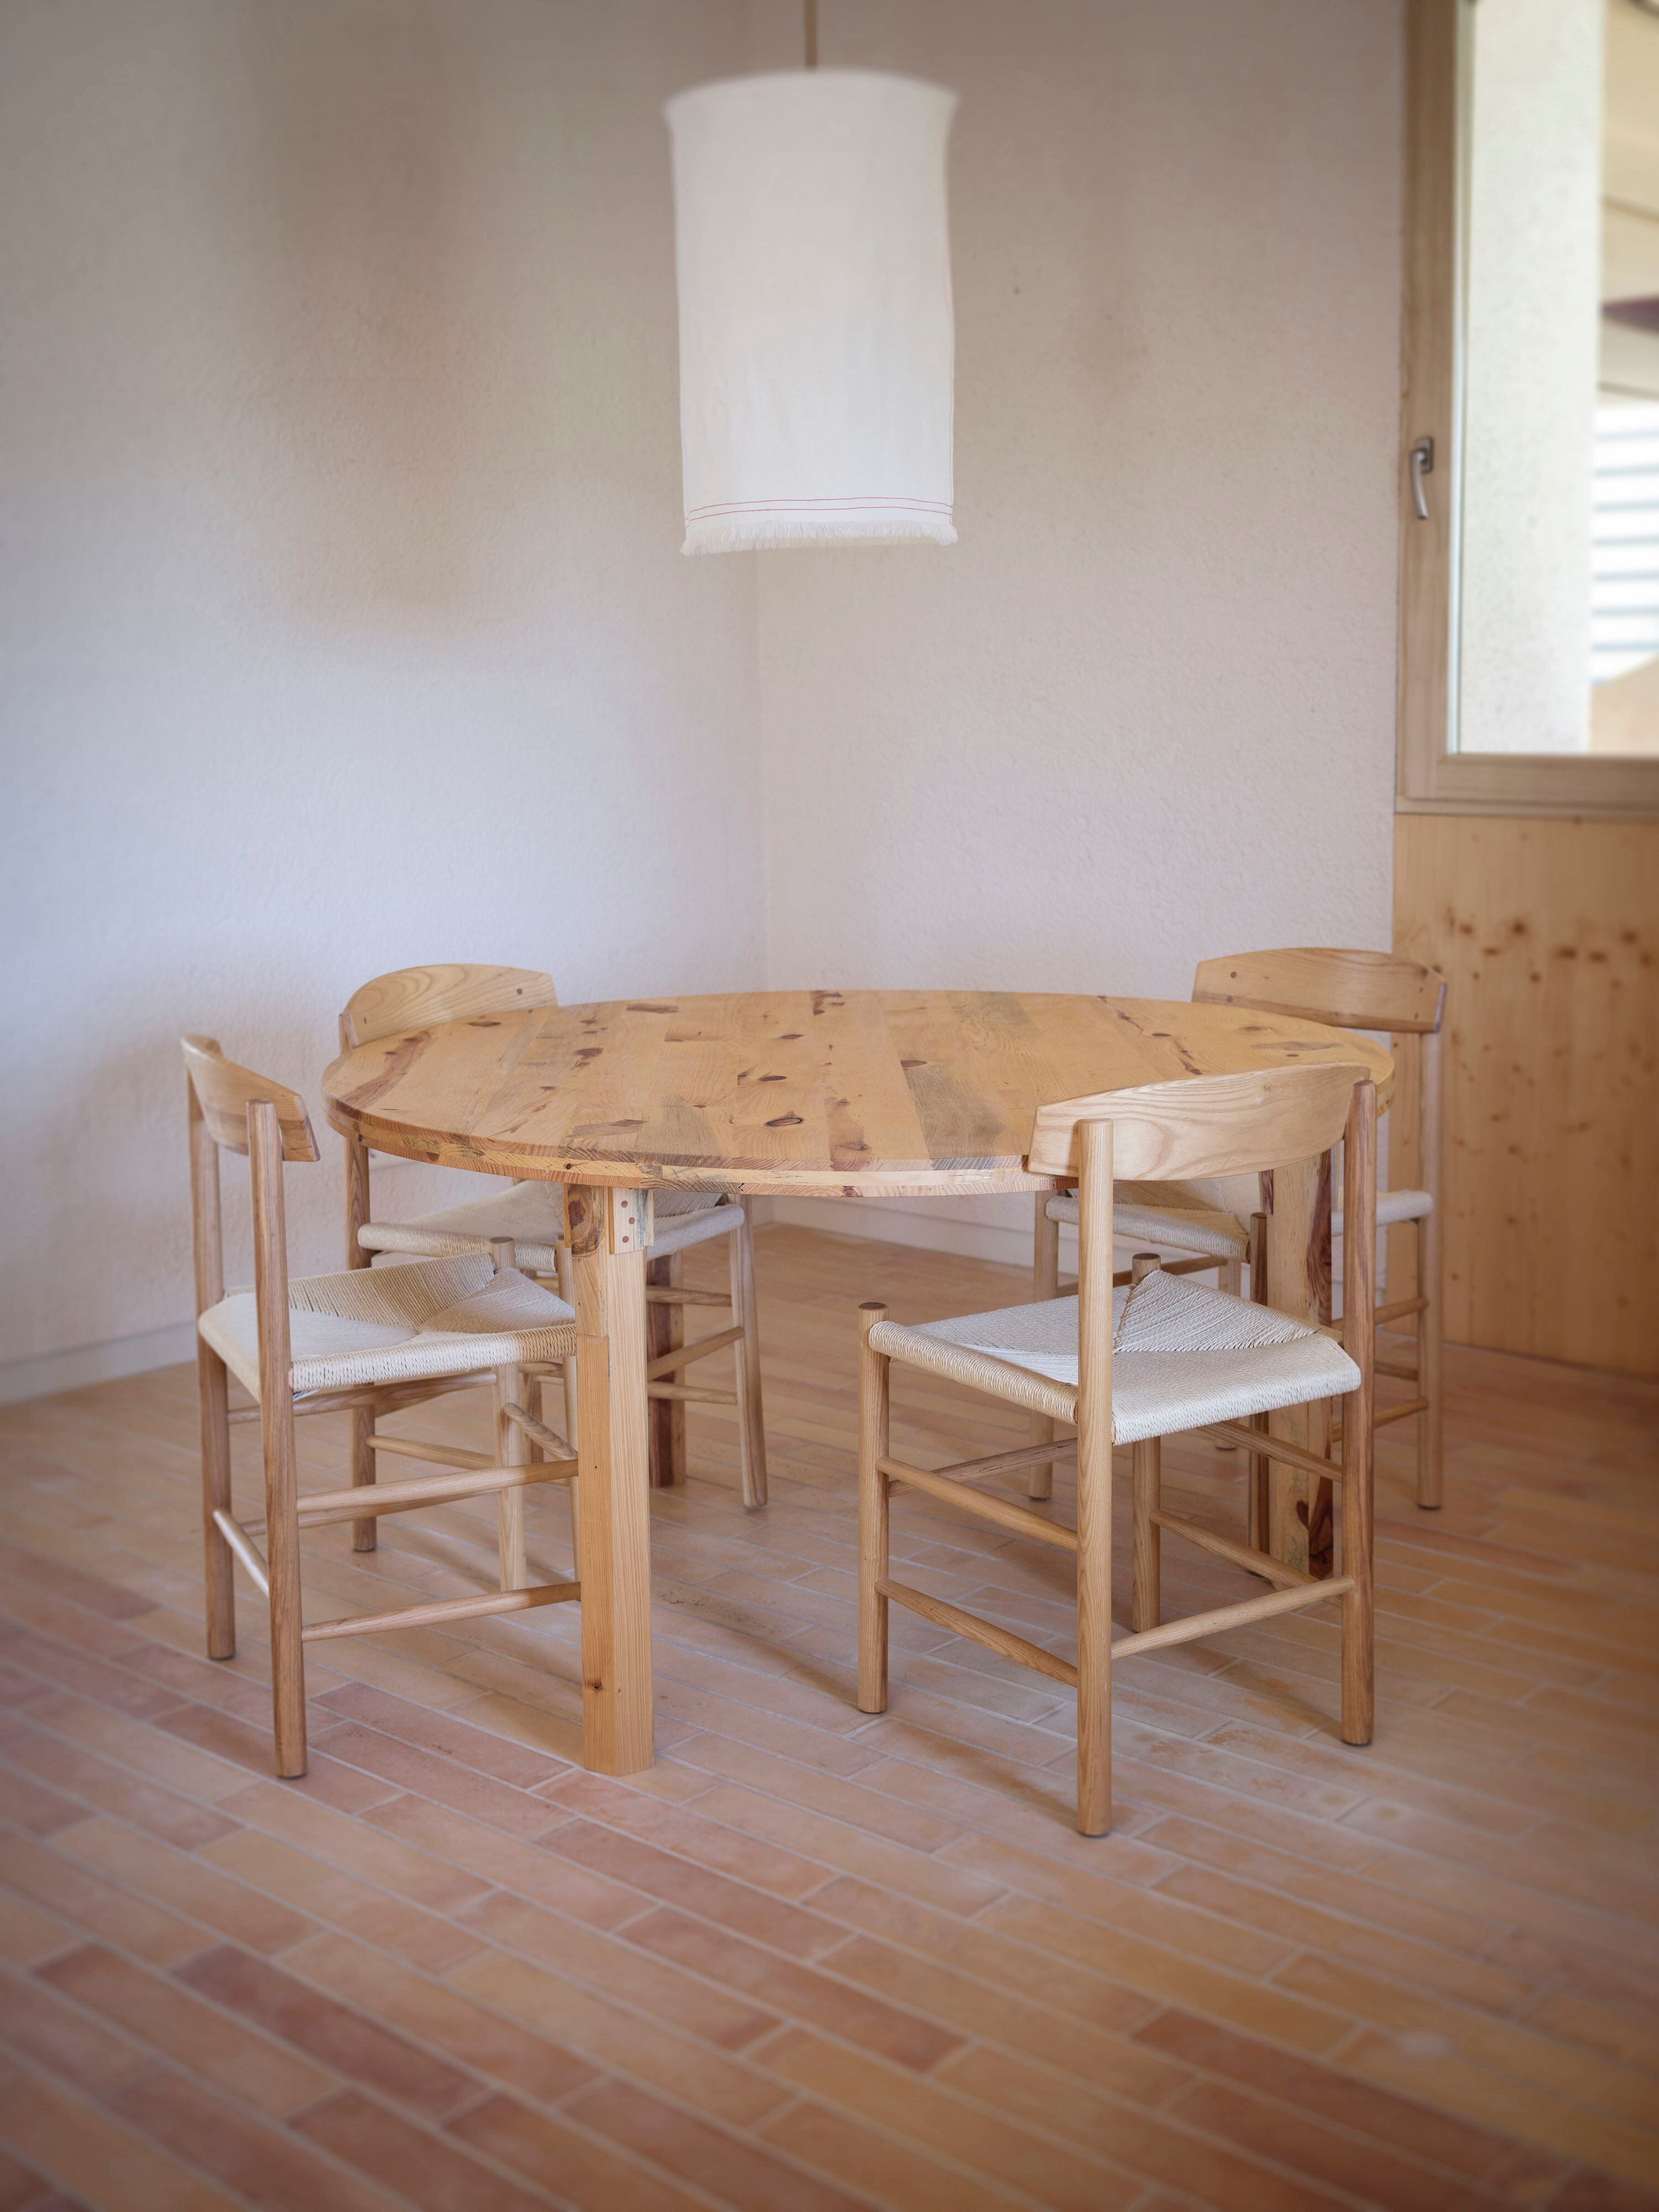 Modelo Taula Rodona de la marca, fabricada íntegramente en madera de pino local. Las sillas son también de Amarar.